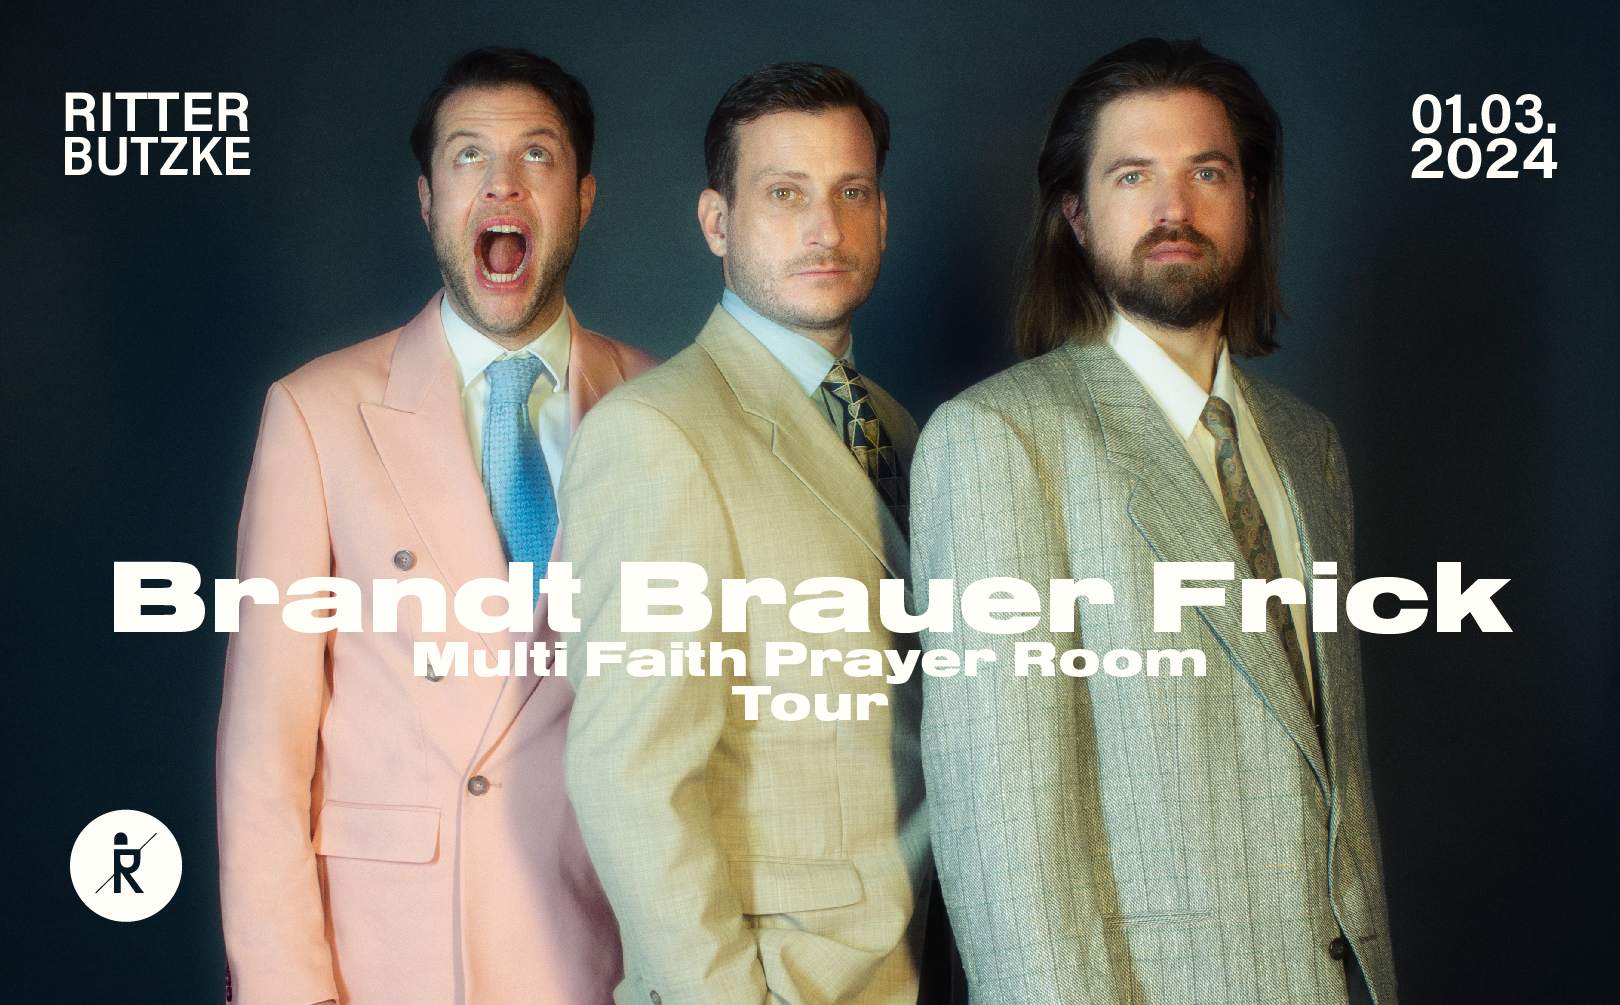 Brandt Brauer Frick - Página frontal